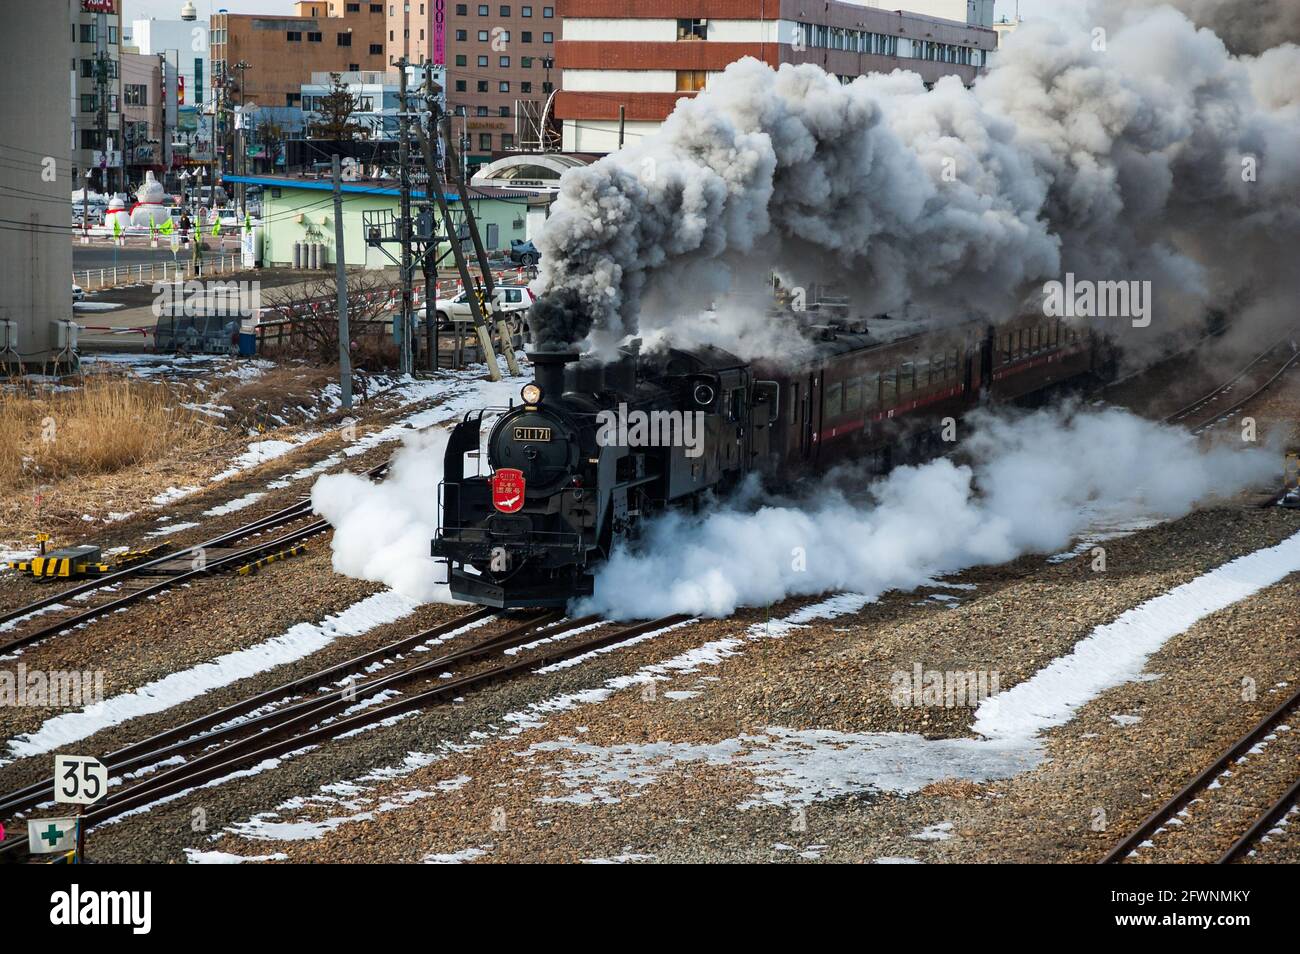 Spécial vapeur japonais Hokkaido en hiver avec une classe C11 locomotive quitte la gare de Kushiro en nuage de fumée. Banque D'Images